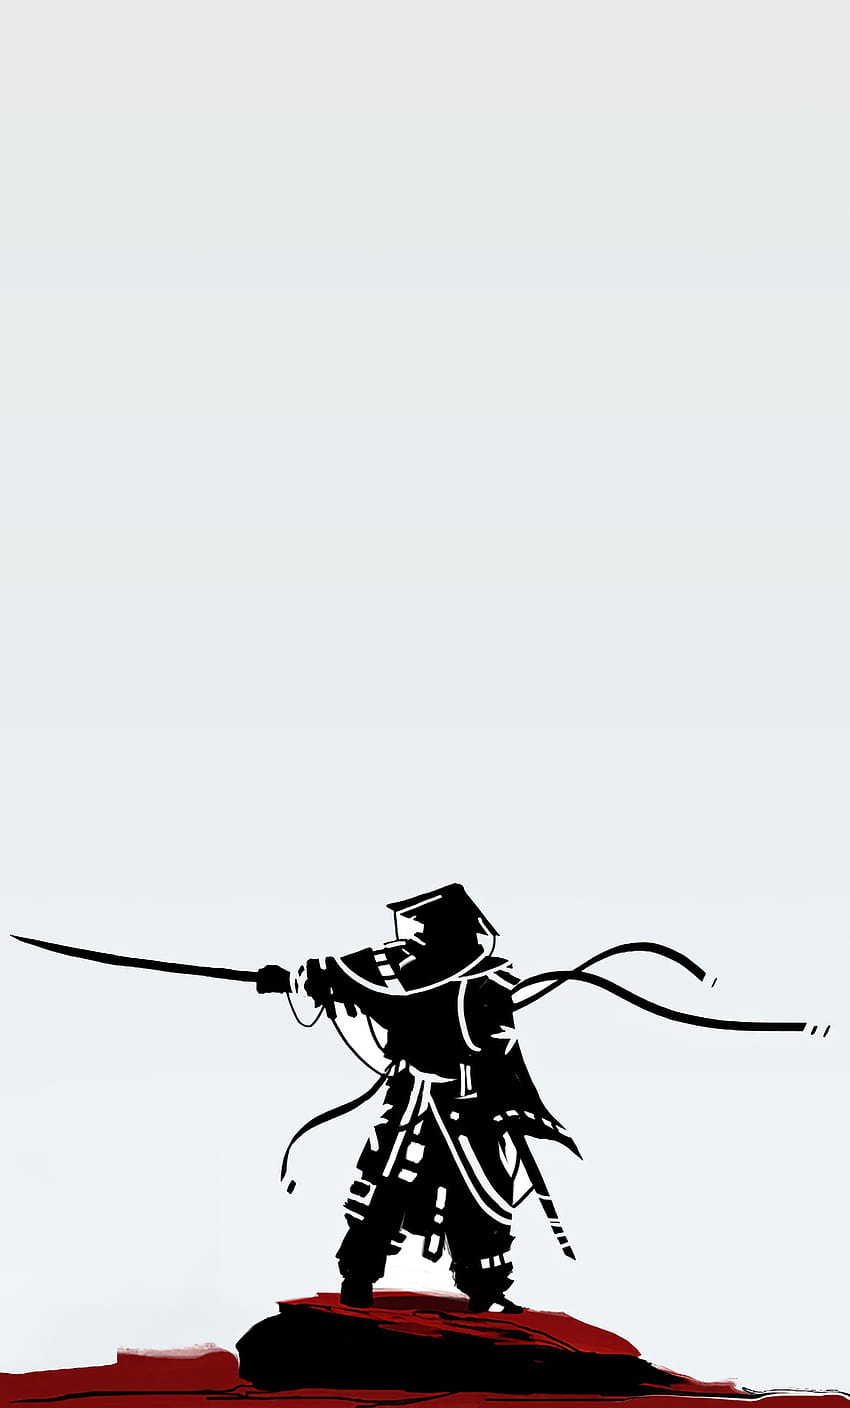 Chiến đấu giữa Sephiroth và Samurai - một cuộc đối đầu khó khăn và đầy căng thẳng. Hãy xem bức hình này để thấy được sự giao thoa giữa truyền thống Samurai và thế giới hiện đại của RPG.